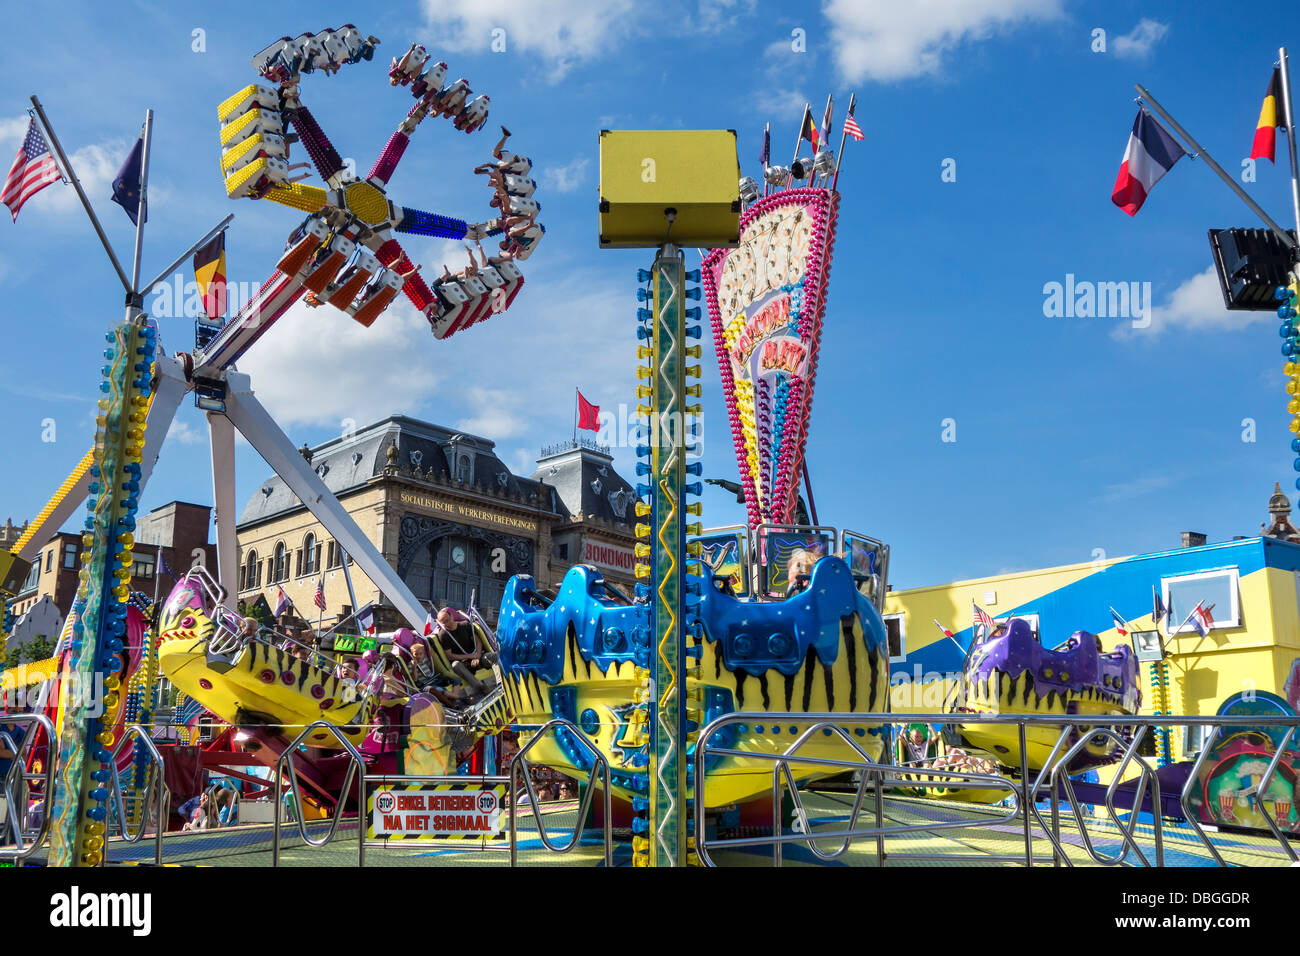 Atracciones de feria en feria viajar / viajar fun fair en el Gentse Feesten / fiestas en Gante, Bélgica verano Foto de stock